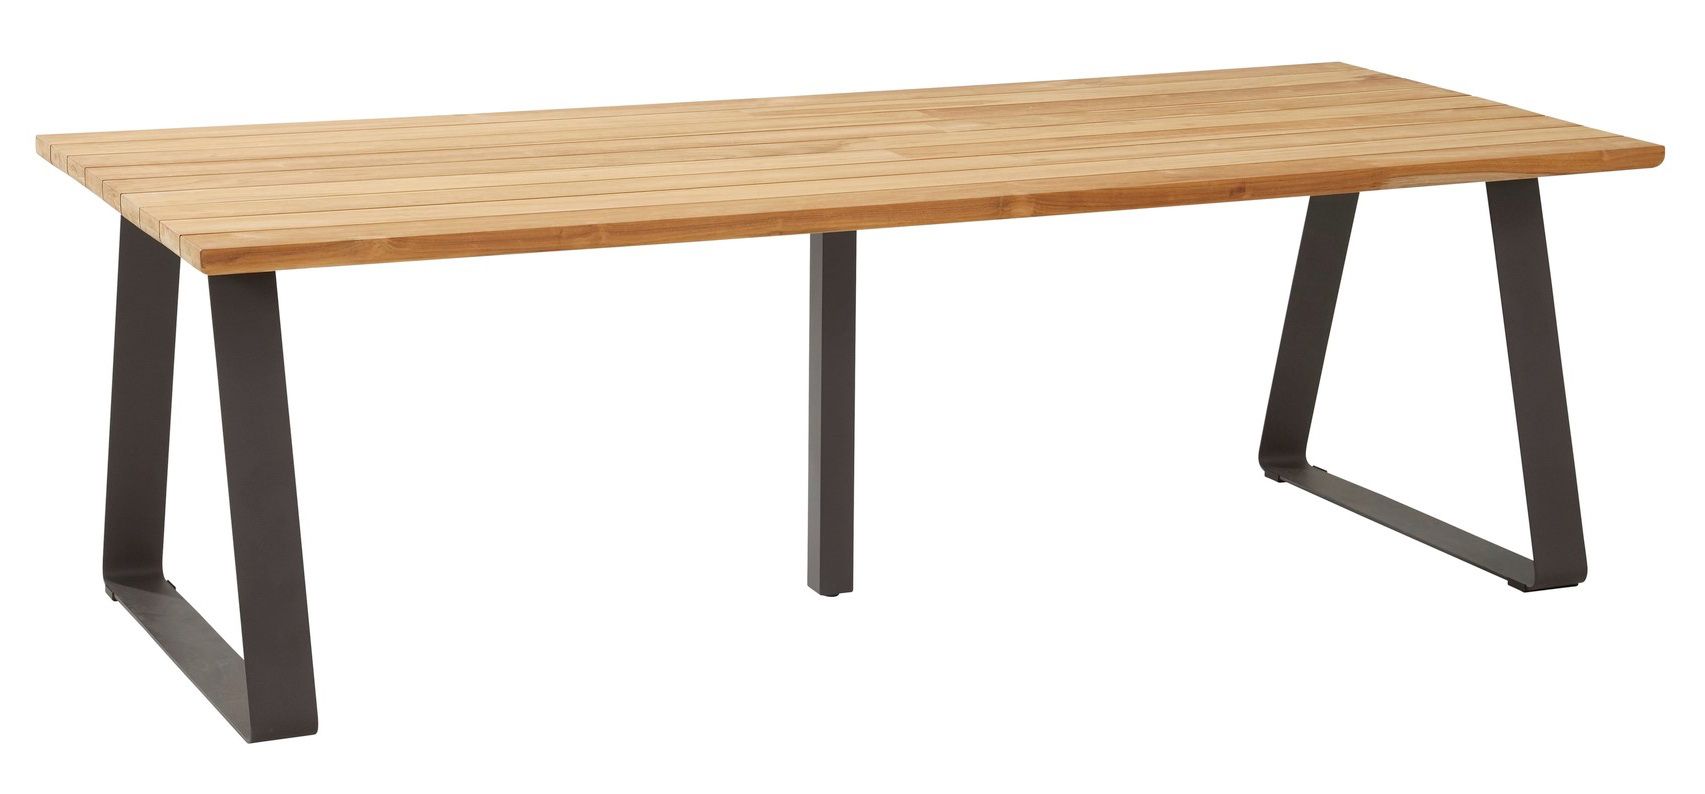 4Seasons Outdoor designové zahradní stoly Basso Table Rectangle (240 x 100 cm) - DESIGNPROPAGANDA